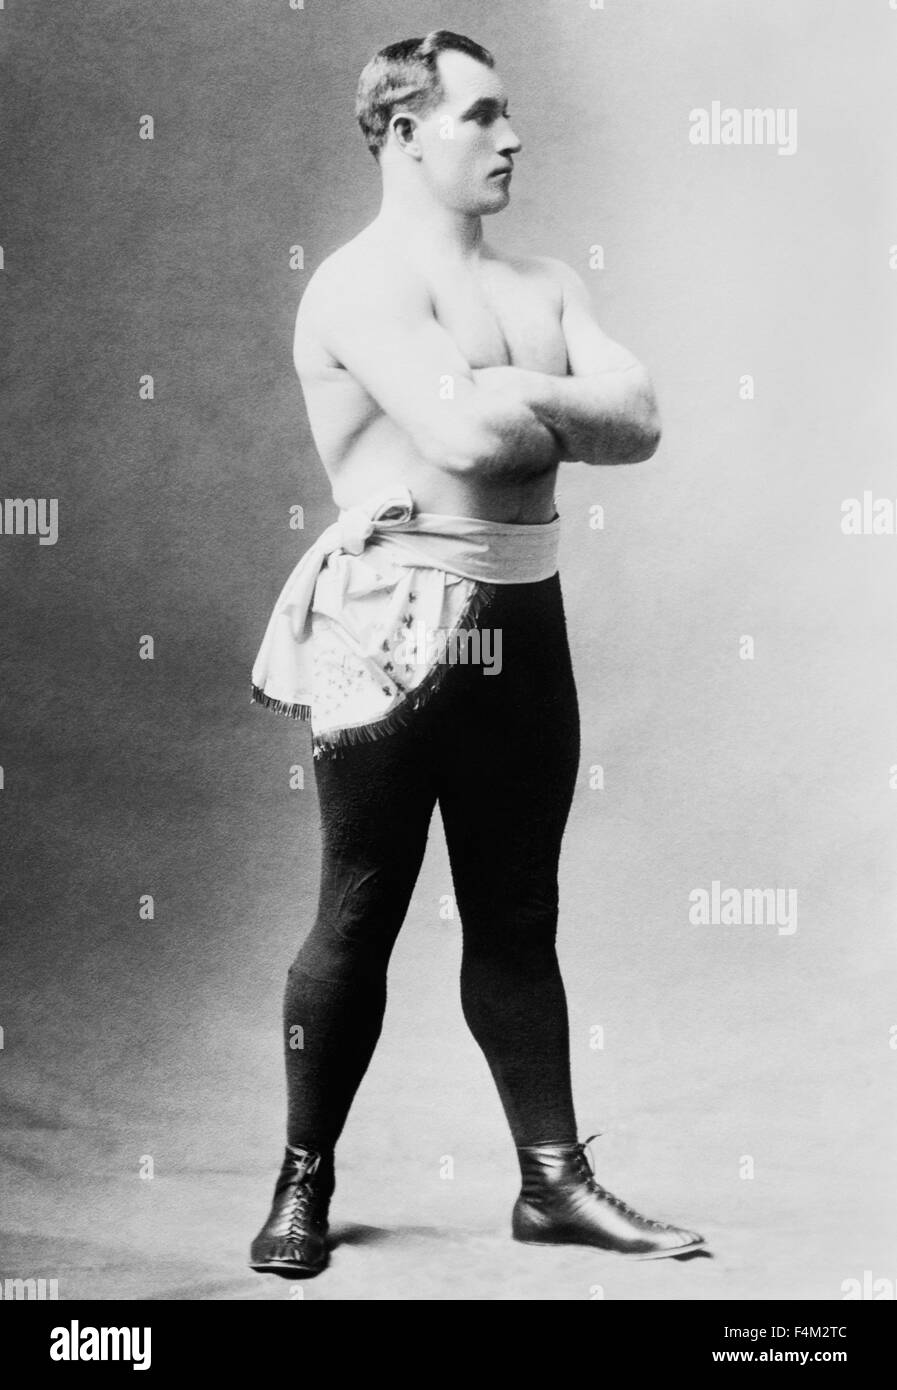 Vintage Porträtfoto von Schwergewichts-Boxer "Sailor" Tom Sharkey (1873-1953). Sharkey, geboren in Dundalk, Irland, in einem jungen Alter von zu Hause weggelaufen und fuhr zur See als ein Schiffsjunge, schließlich Ankunft in New York City im Jahr 1892 und Beitritt der US Navy. Er begann seine Box-Karriere nach der Bereitstellung nach Hawaii und fuhr fort, mehr als 50 Kämpfe - einige der großen Meister der Ära, einschließlich Jim Corbett, Bob Fitzsimmons und Jim Jeffries zu kämpfen haben. Obwohl nie gewinnen die Welt-Schwergewichts-Krone wird Sharkey allgemein als einer der großen Kämpfer seiner Zeit angesehen. Stockfoto